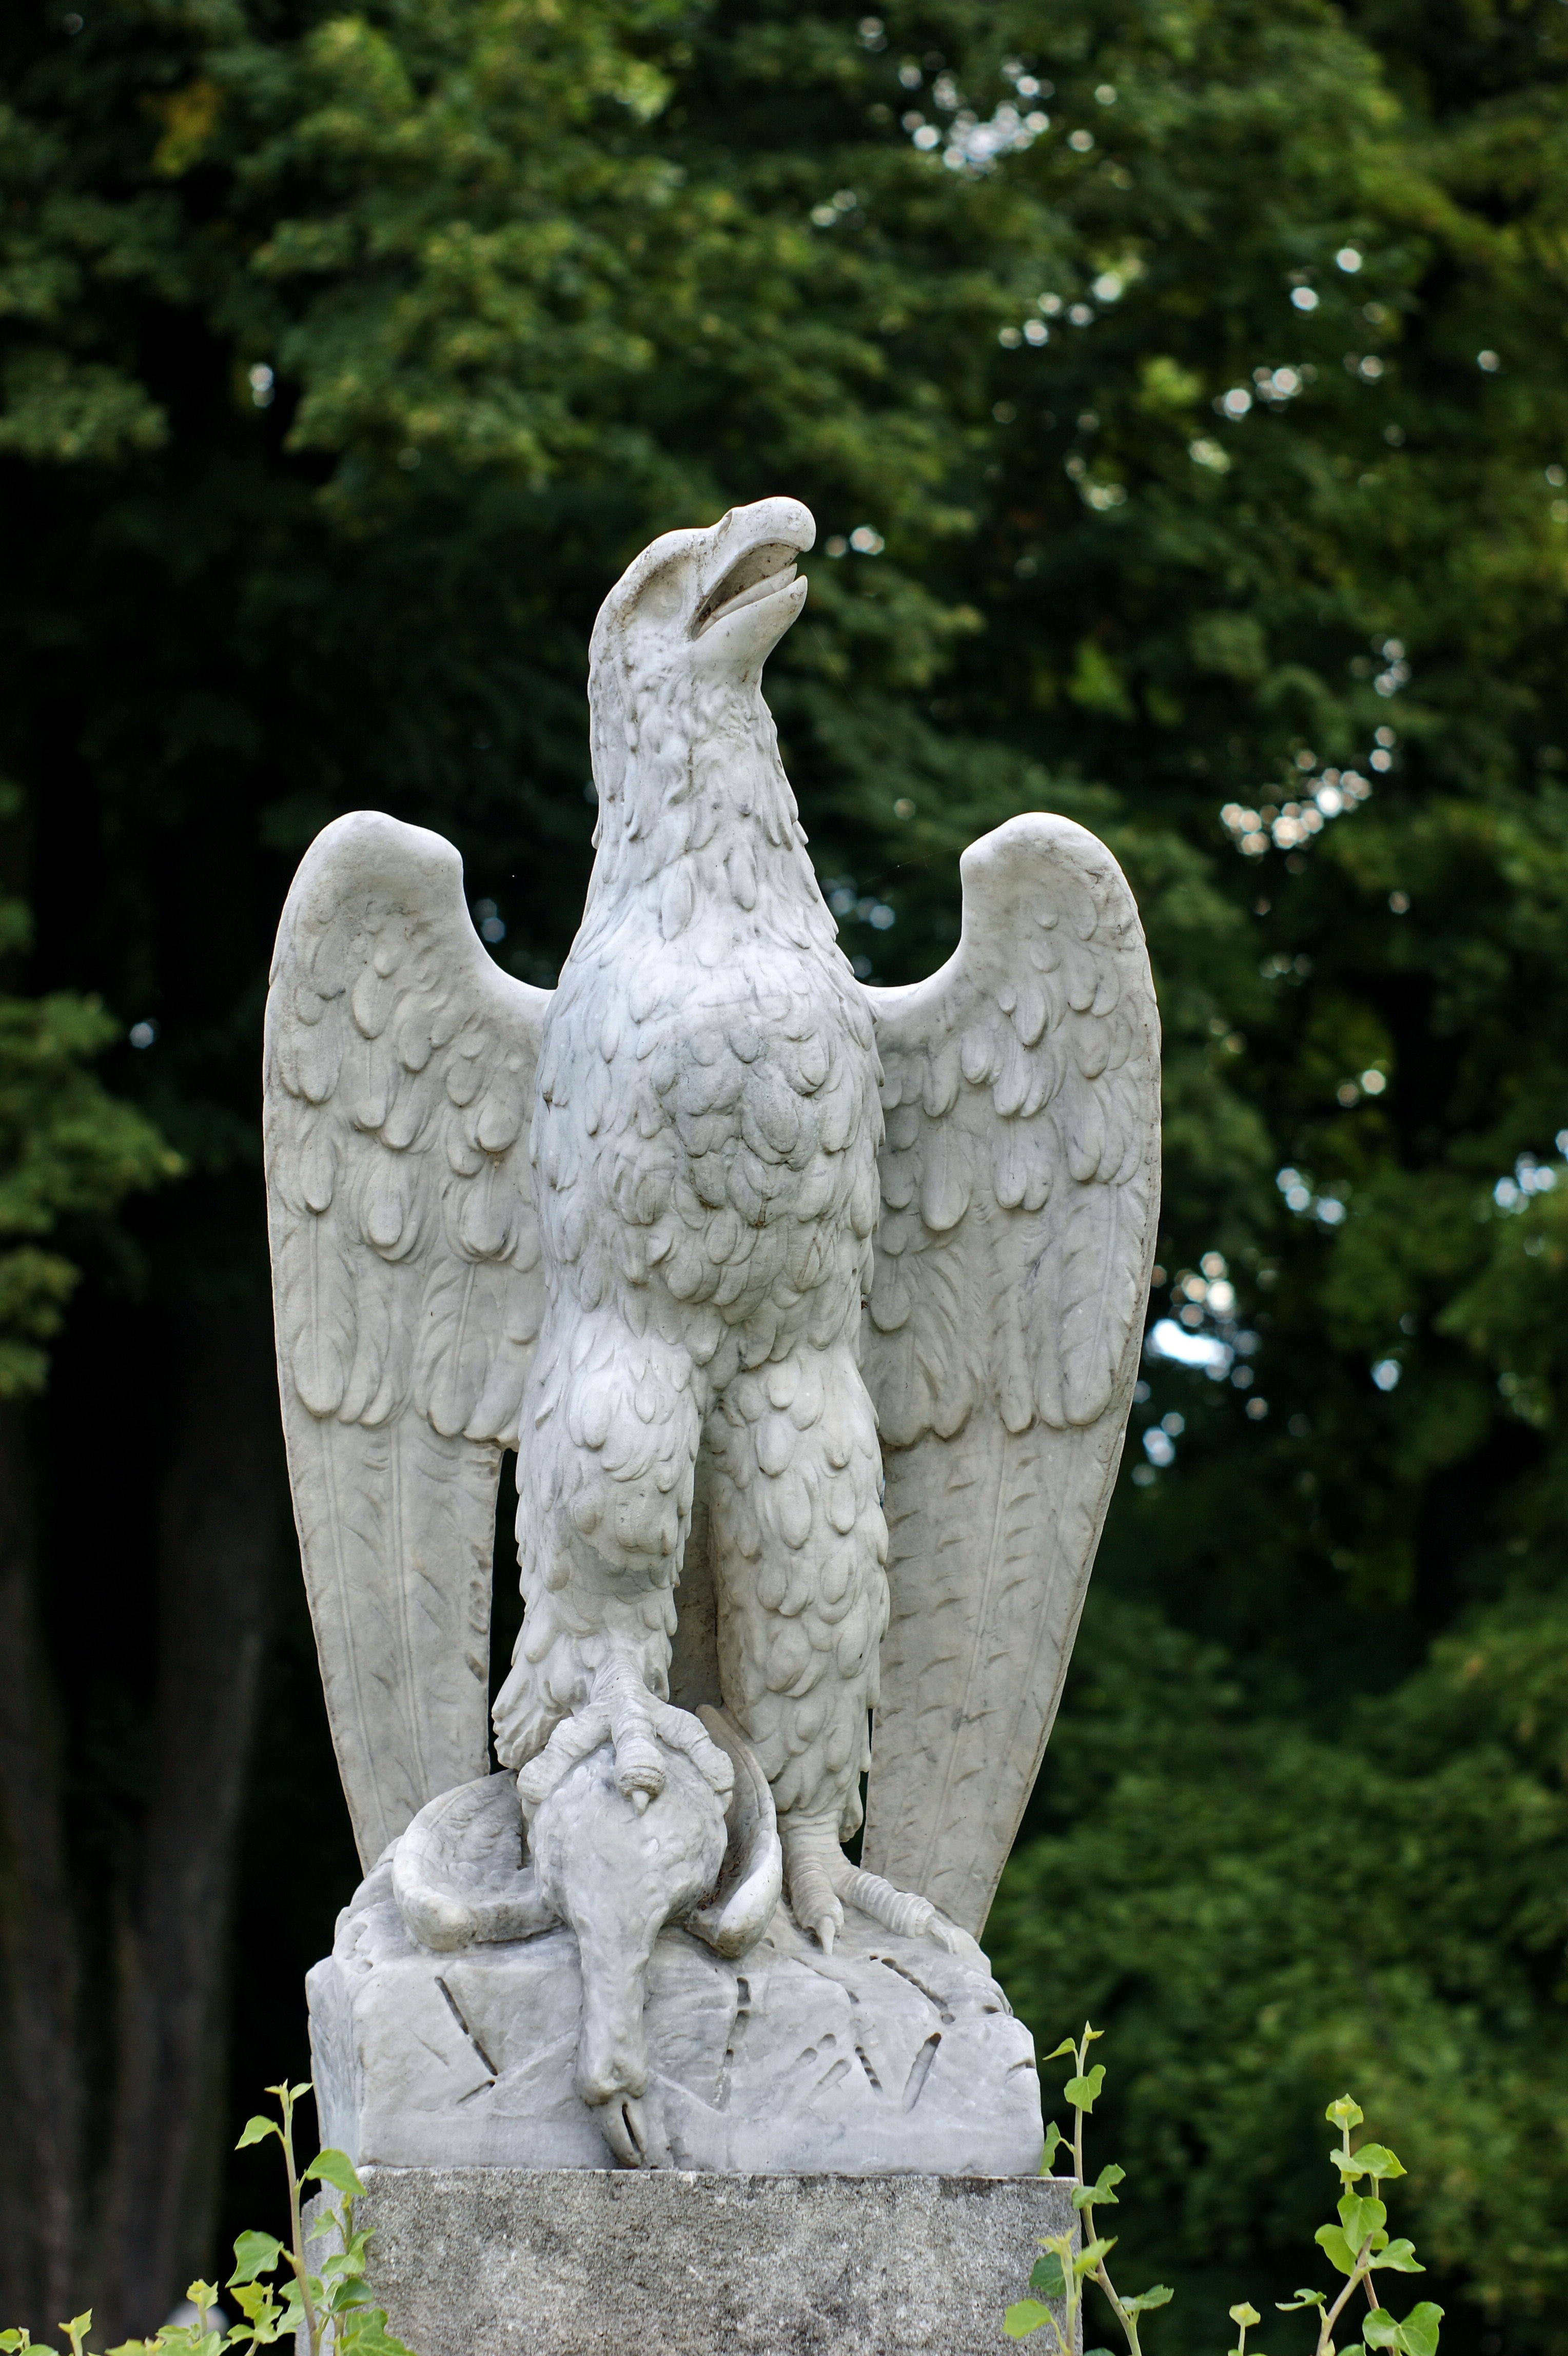 white eagle statue